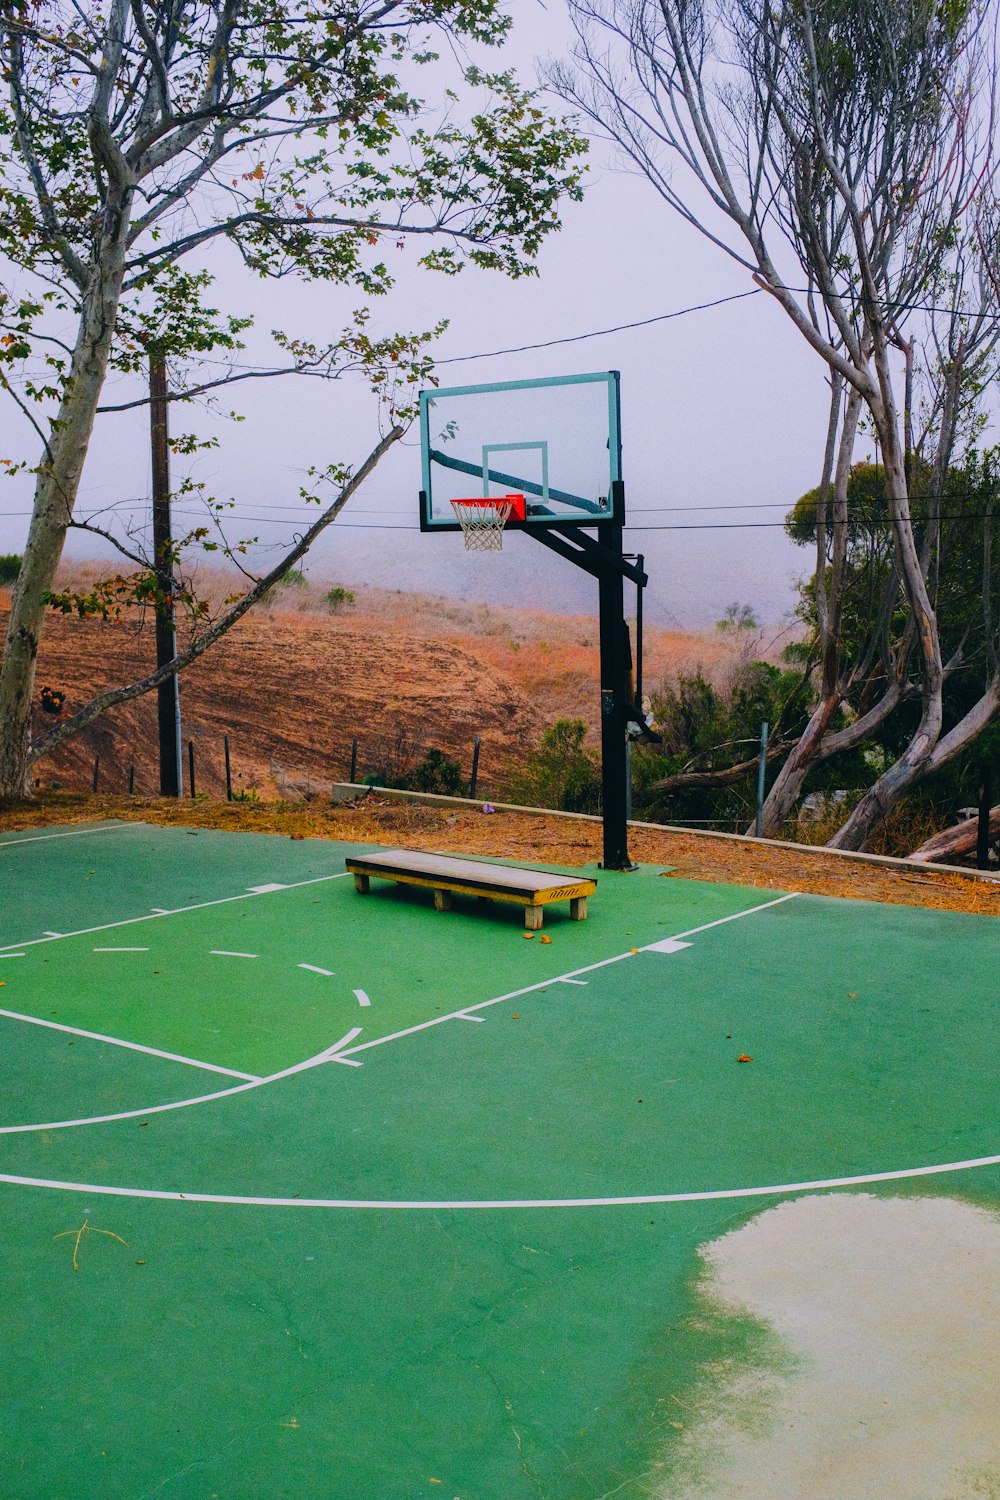 terrain de basket-ball sans personne